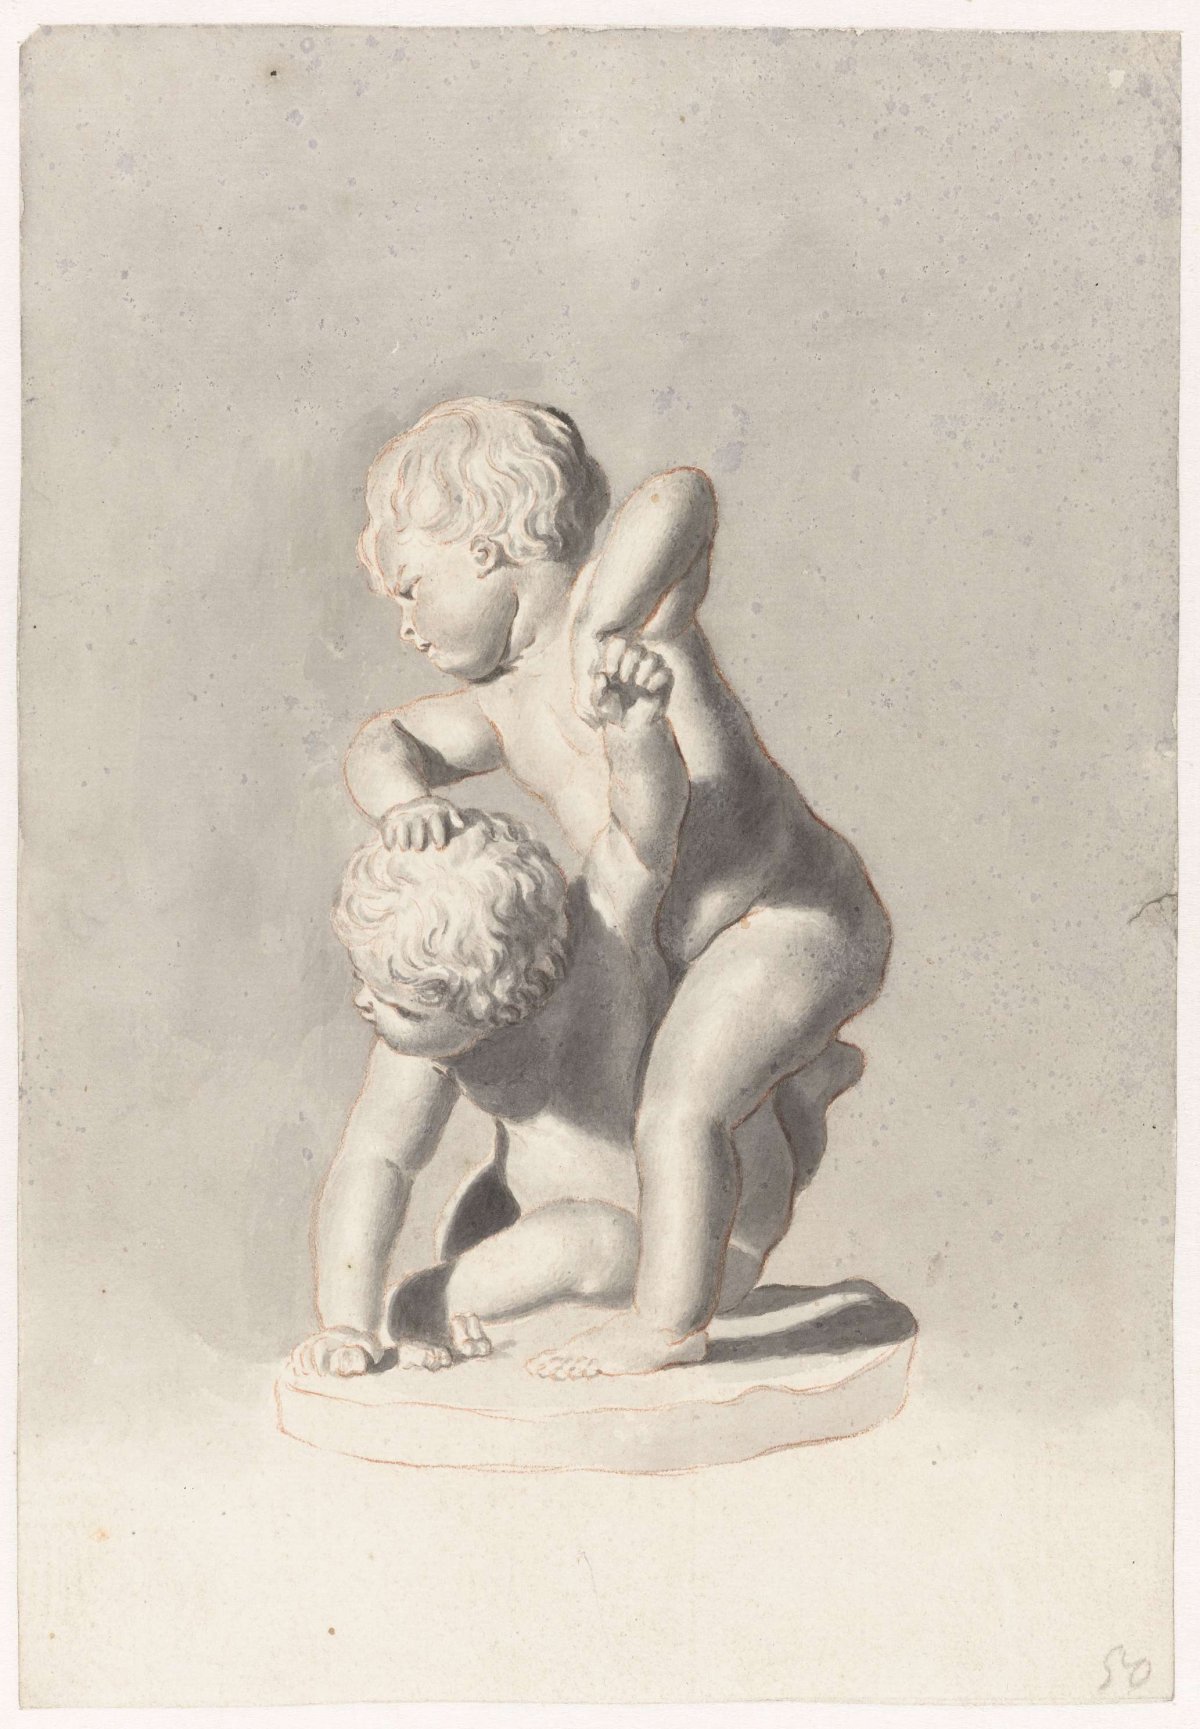 Two fighting children, Jan de Bisschop, 1648 - 1671